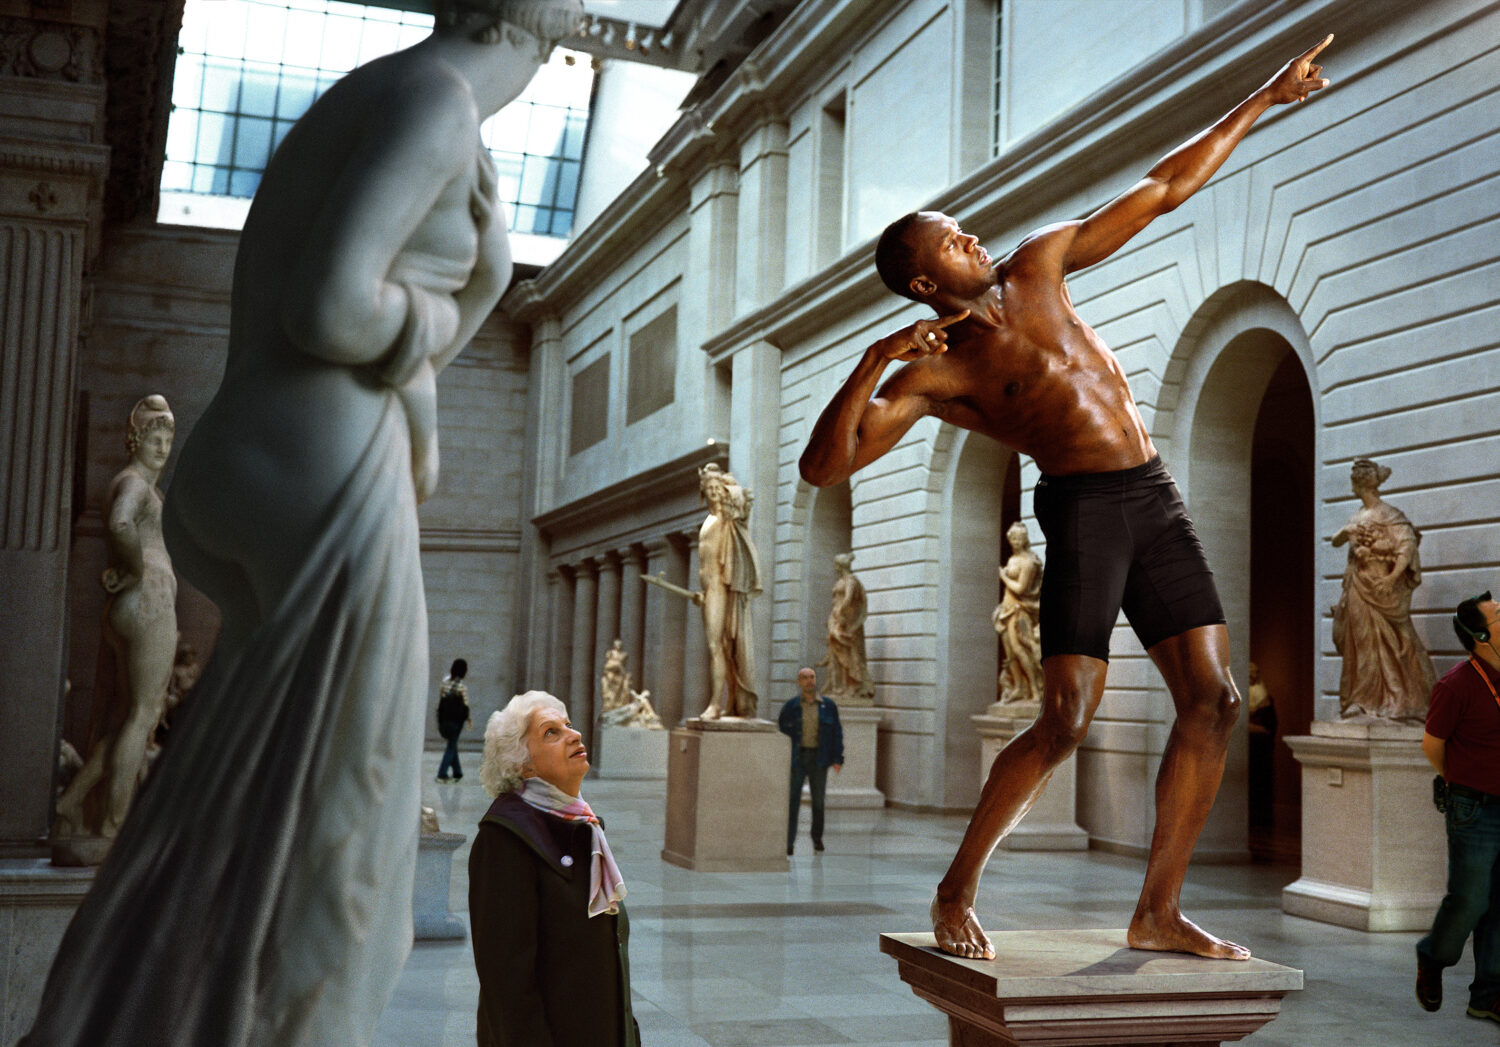 Martin Schoeller: Usain Bolt at The Meropolitan Museum of Art